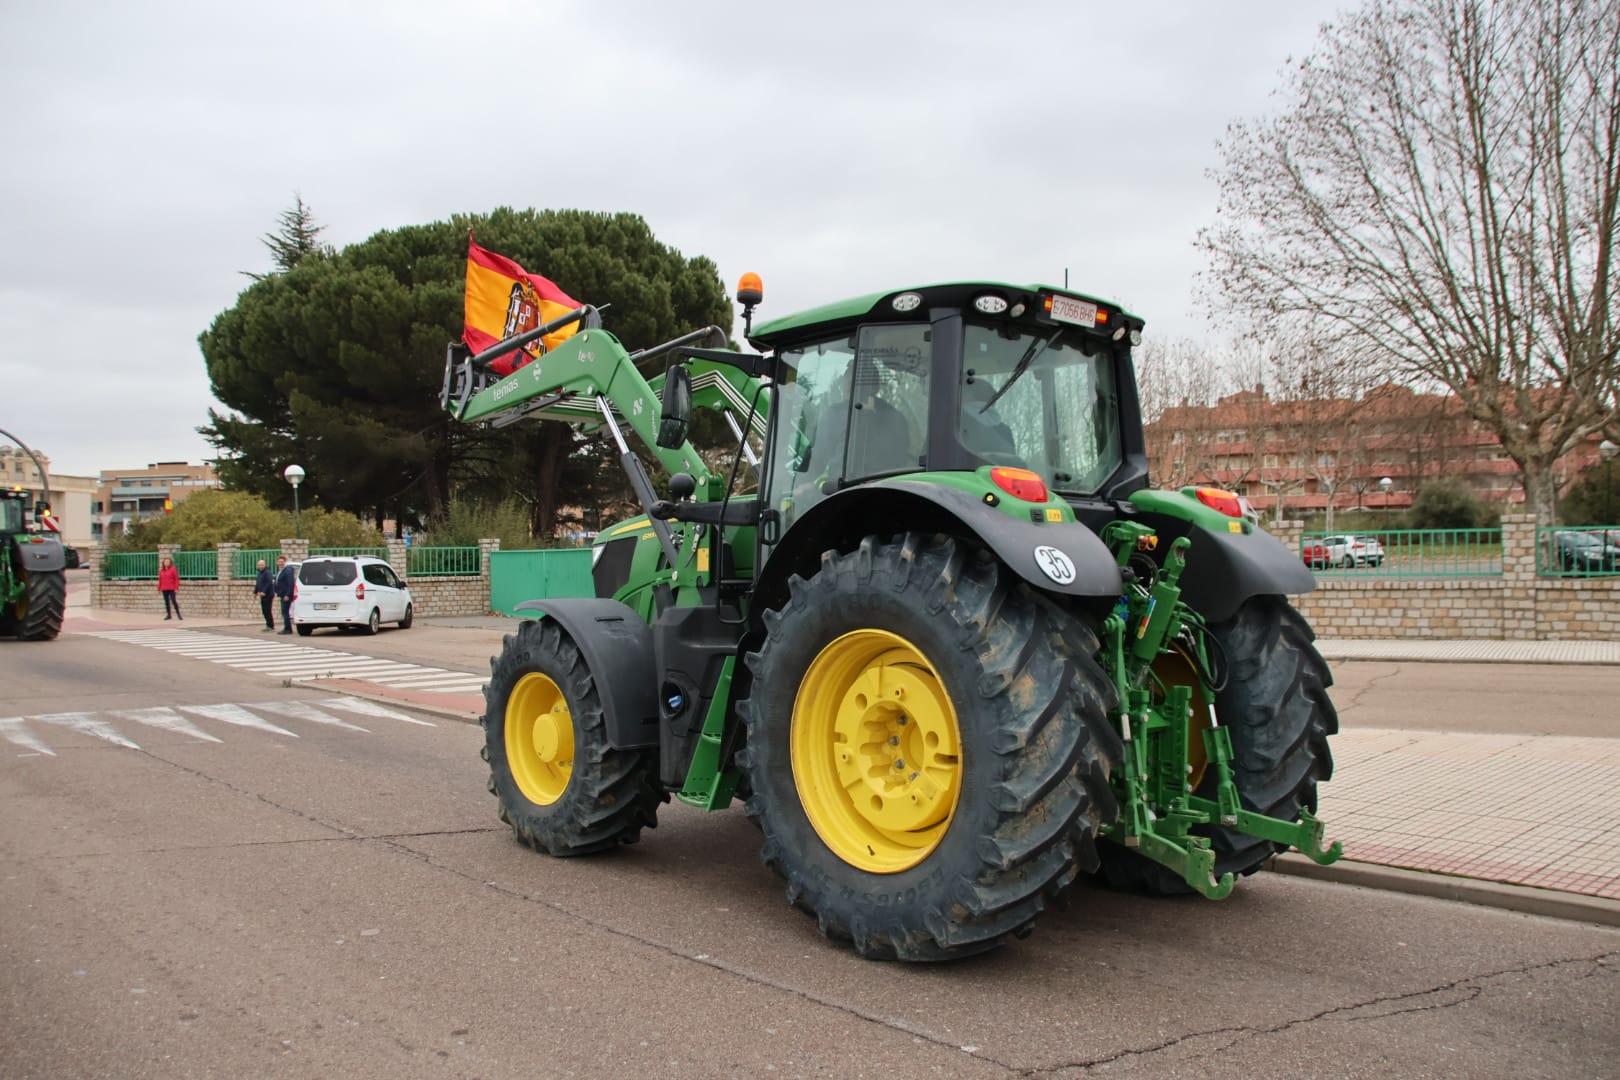 Tractorada en Salamanca este miércoles, 7 de febrero (3)